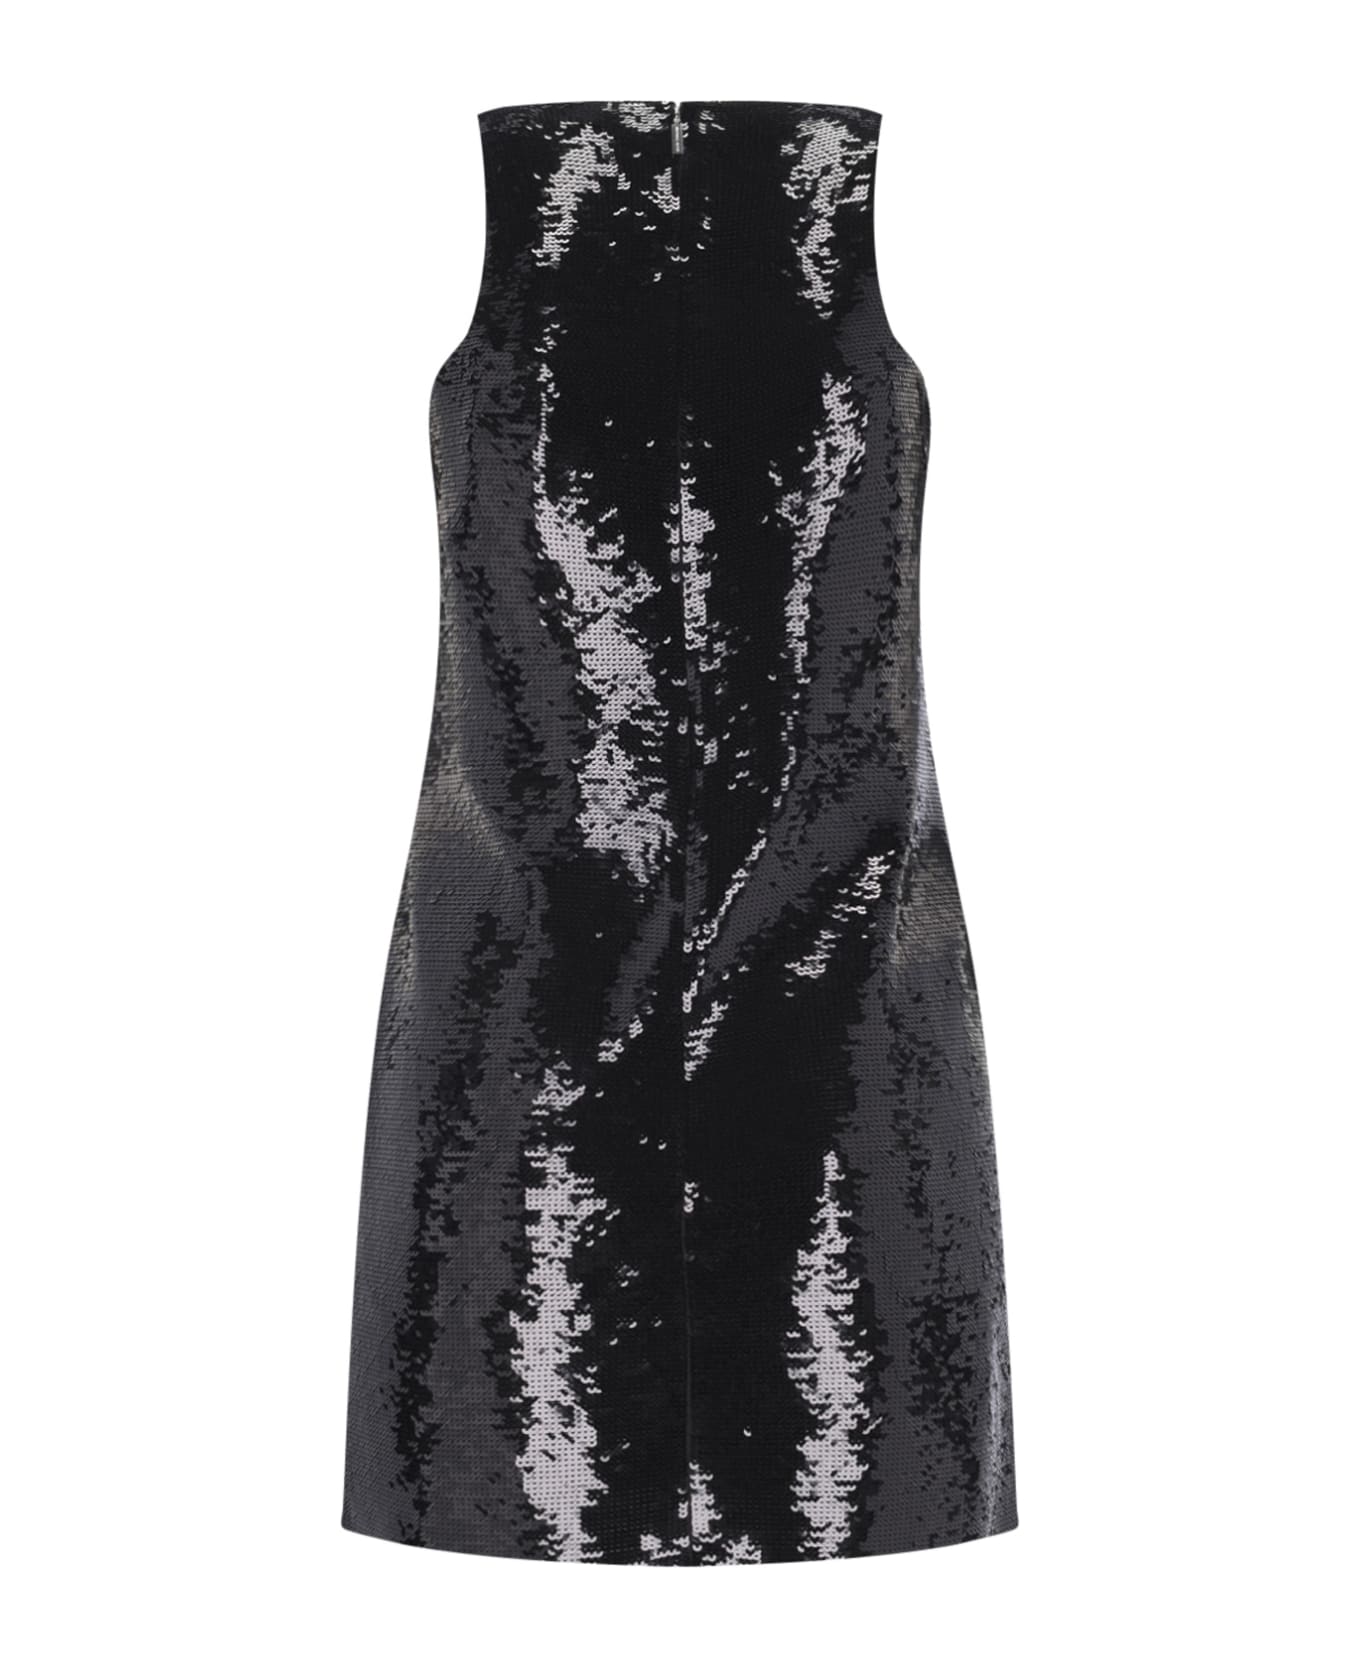 Michael Kors Sequin Mini Dress - Black